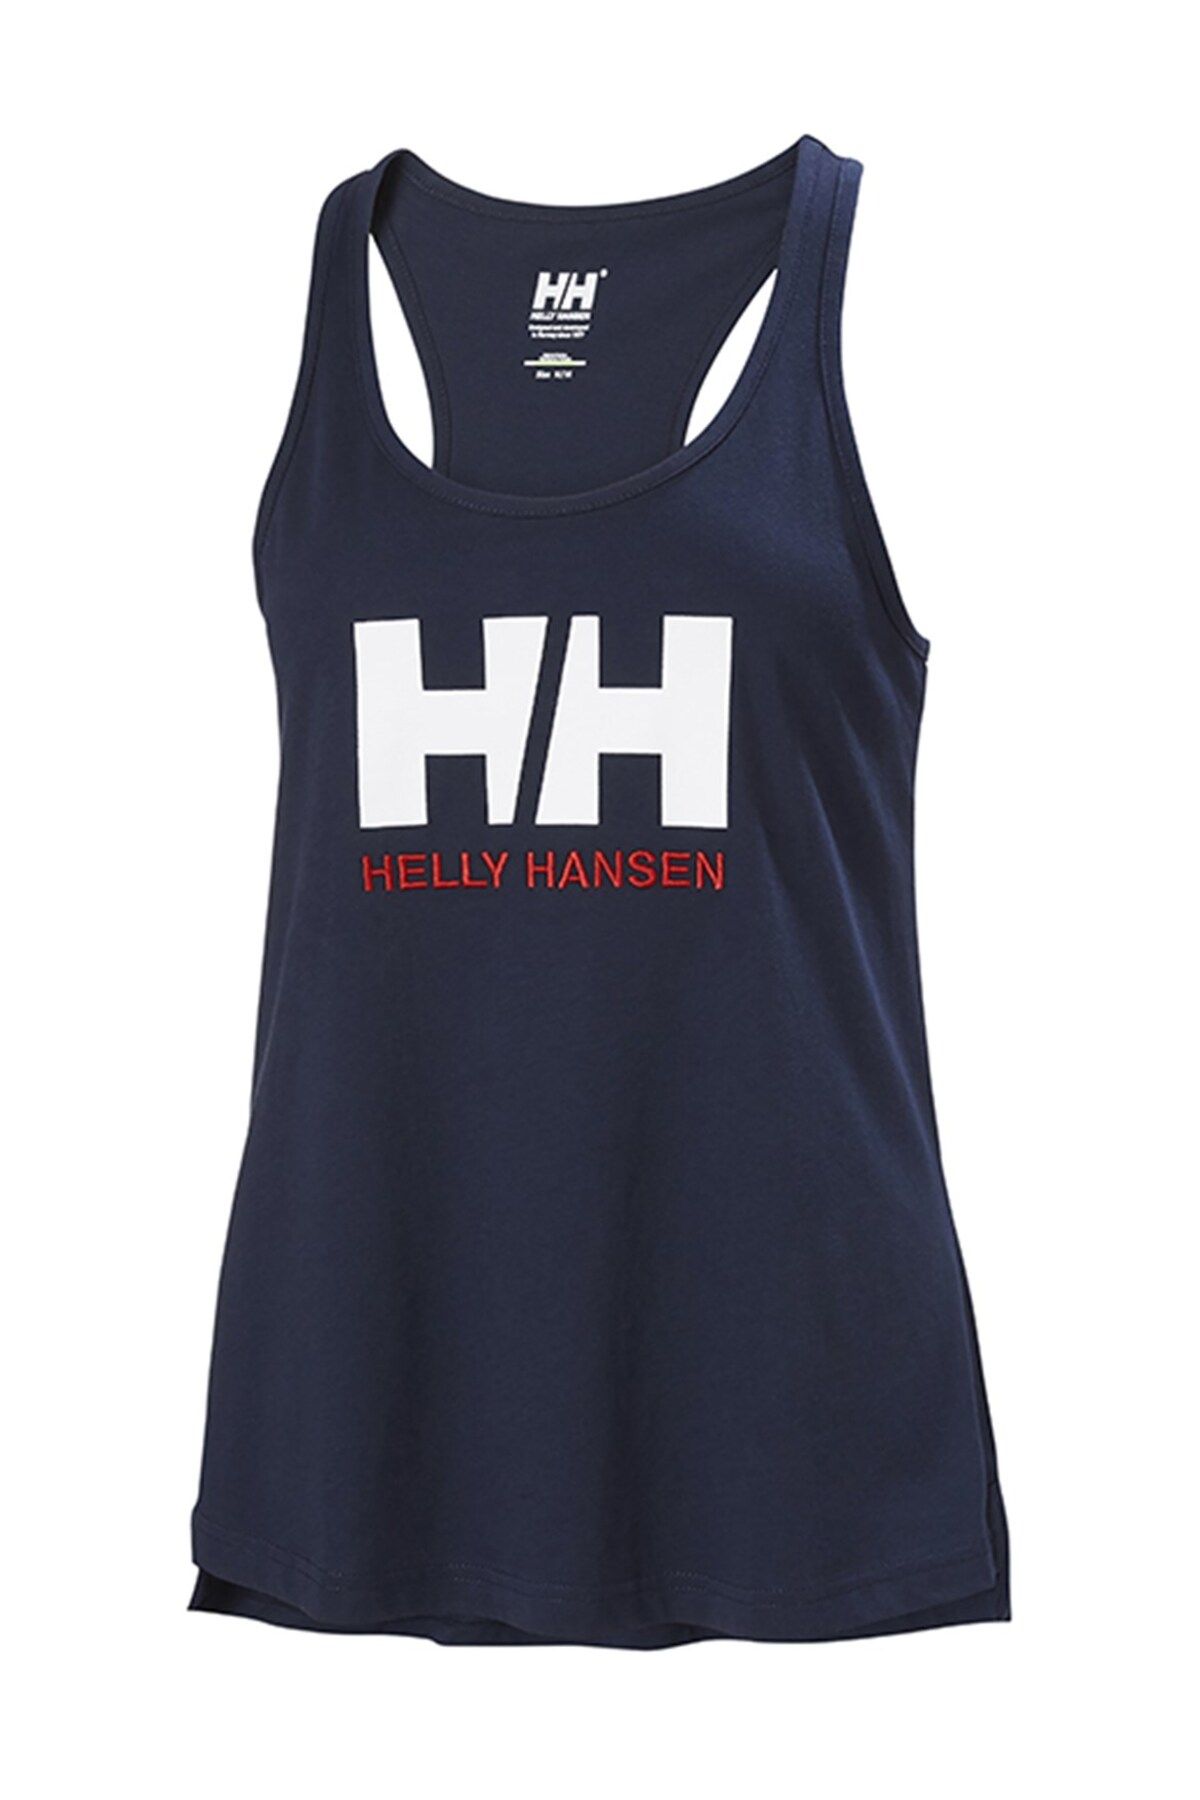 Helly Hansen Hh W Hh Logo Sınglet